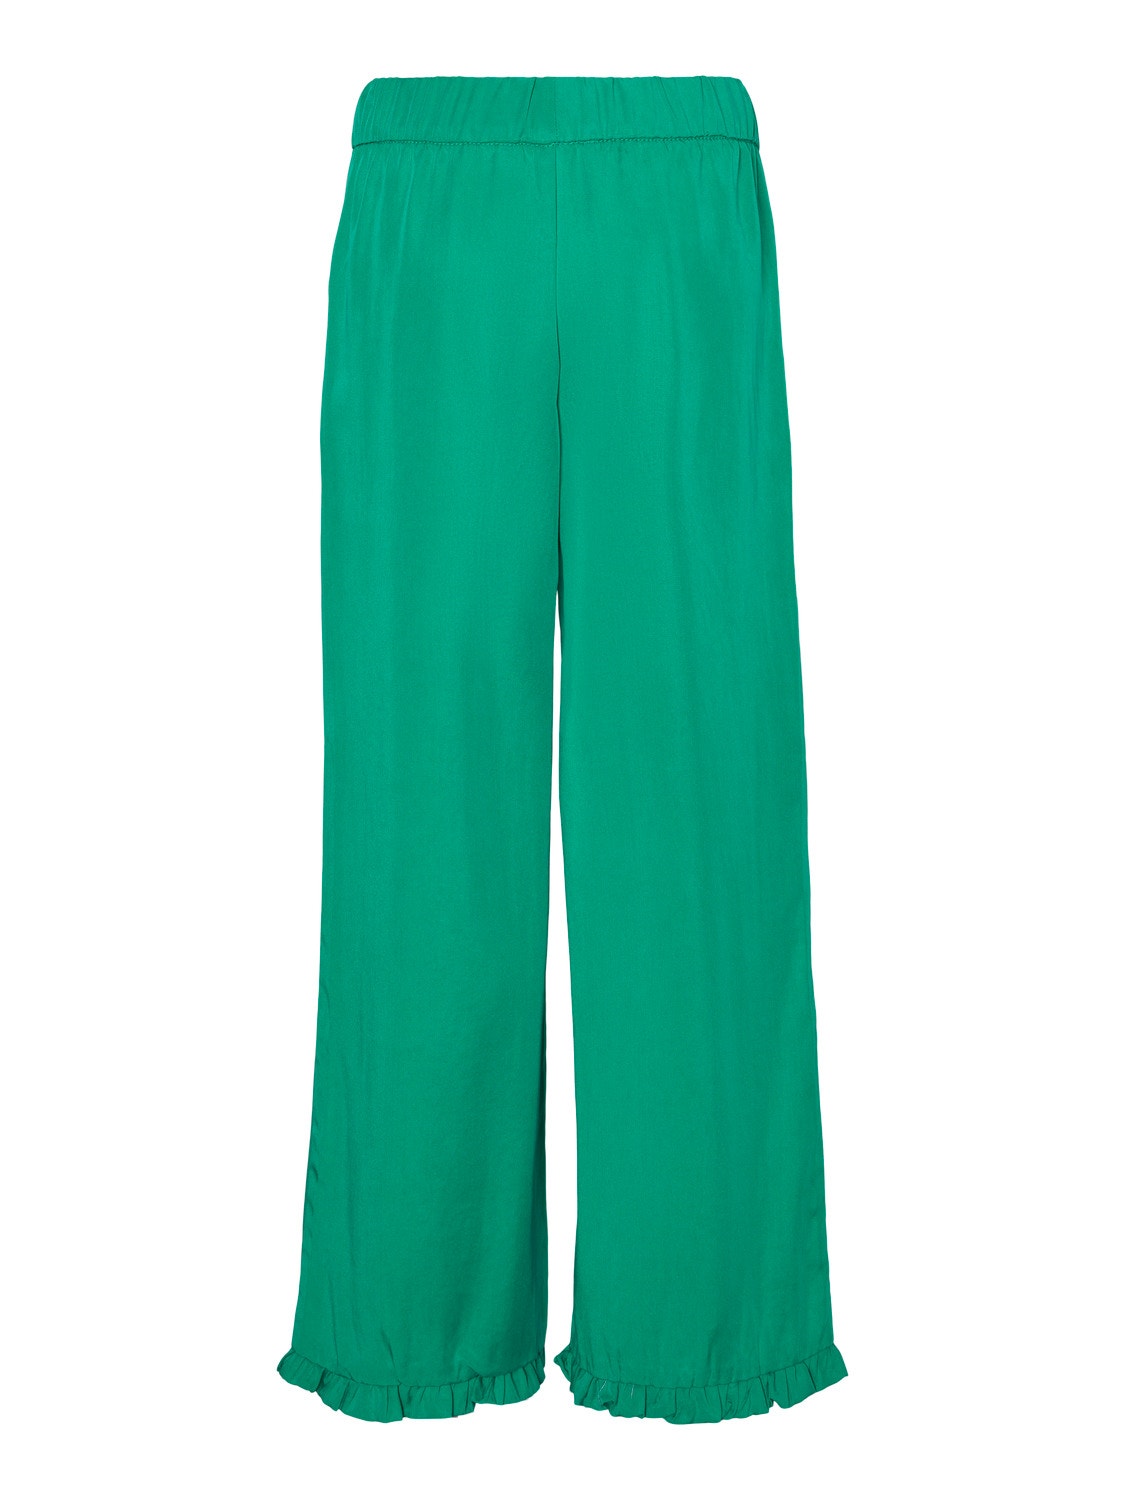 Vero Moda VMHARPER Trousers -Bright Green - 10283853